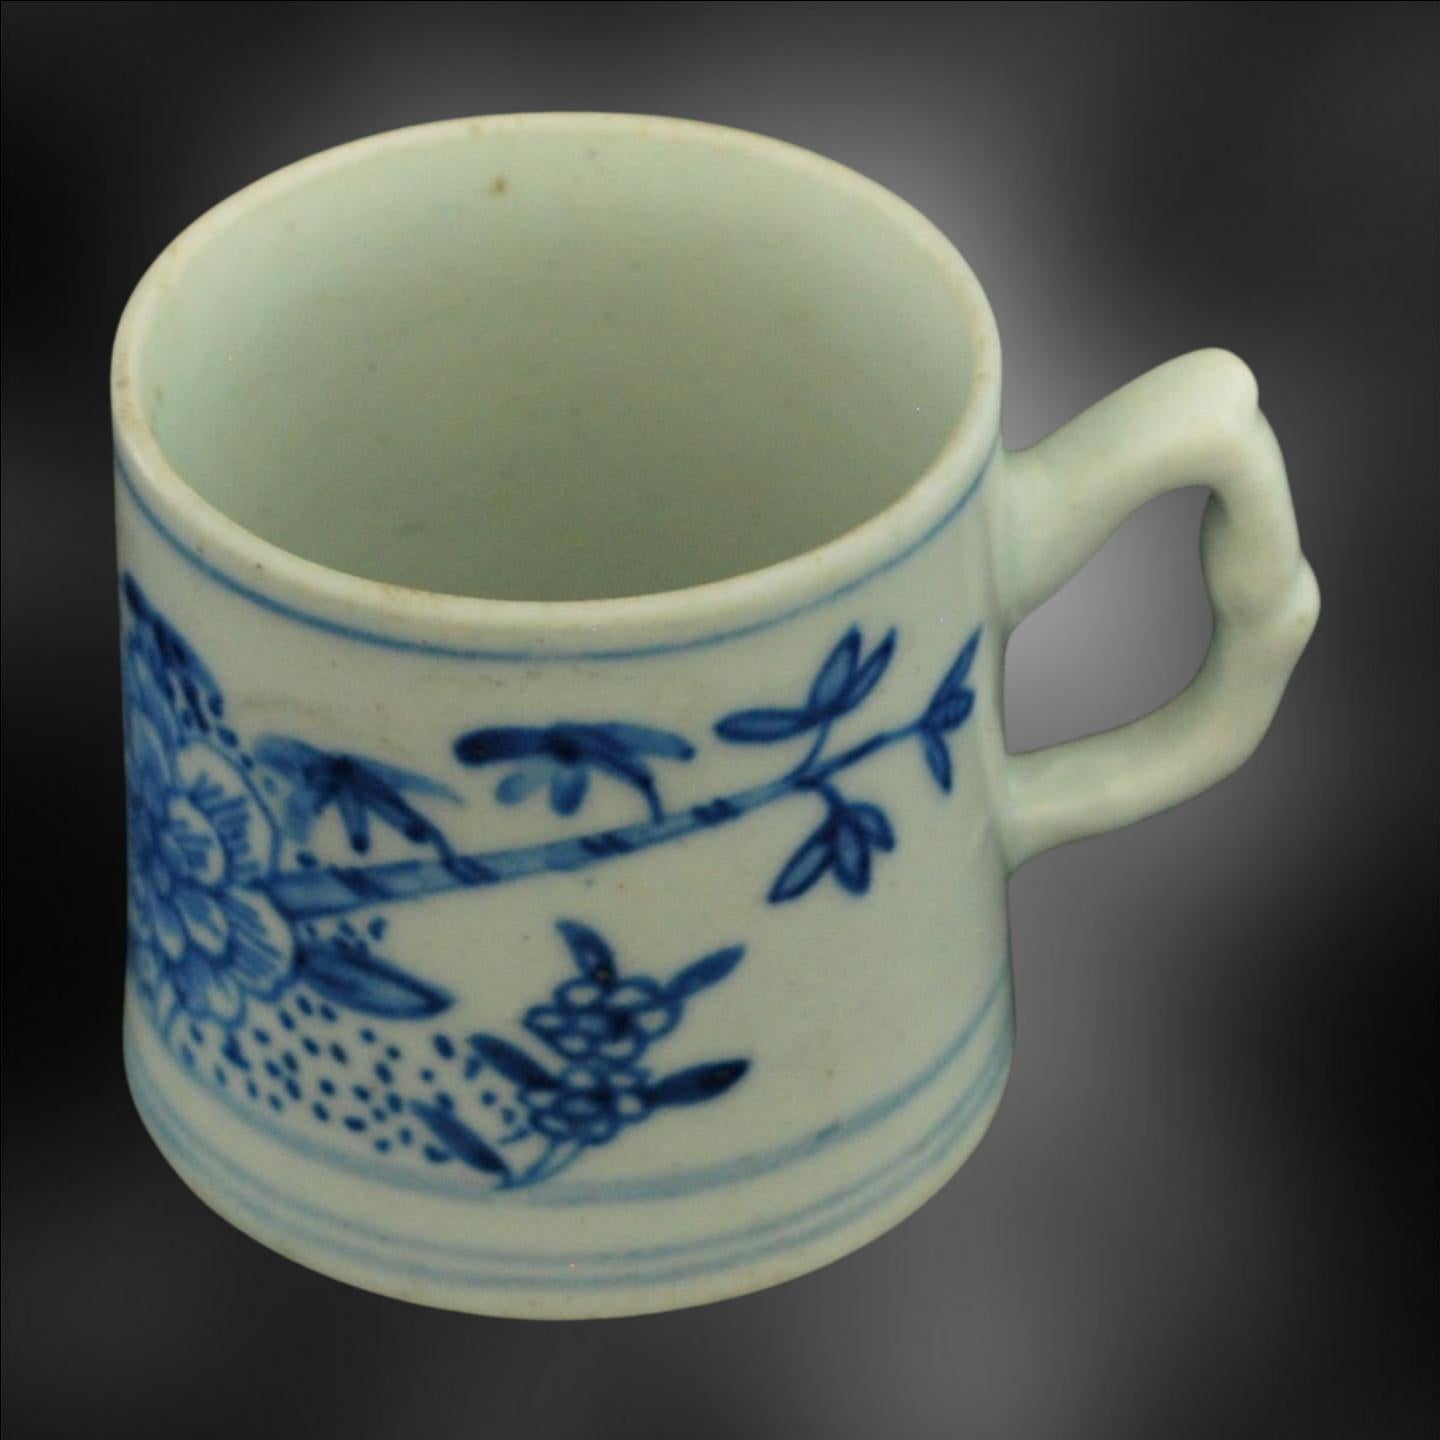 Eine frühe Kaffeekanne, bemalt mit blauer Unterglasurmalerei mit Pfingstrosen und Bambus. Das Gemälde ist mit dem Krug von William Pether aus dem Jahr 1754 verbunden.

Die Dekoration ist direkt von chinesischen Vorbildern übernommen und sollte mit